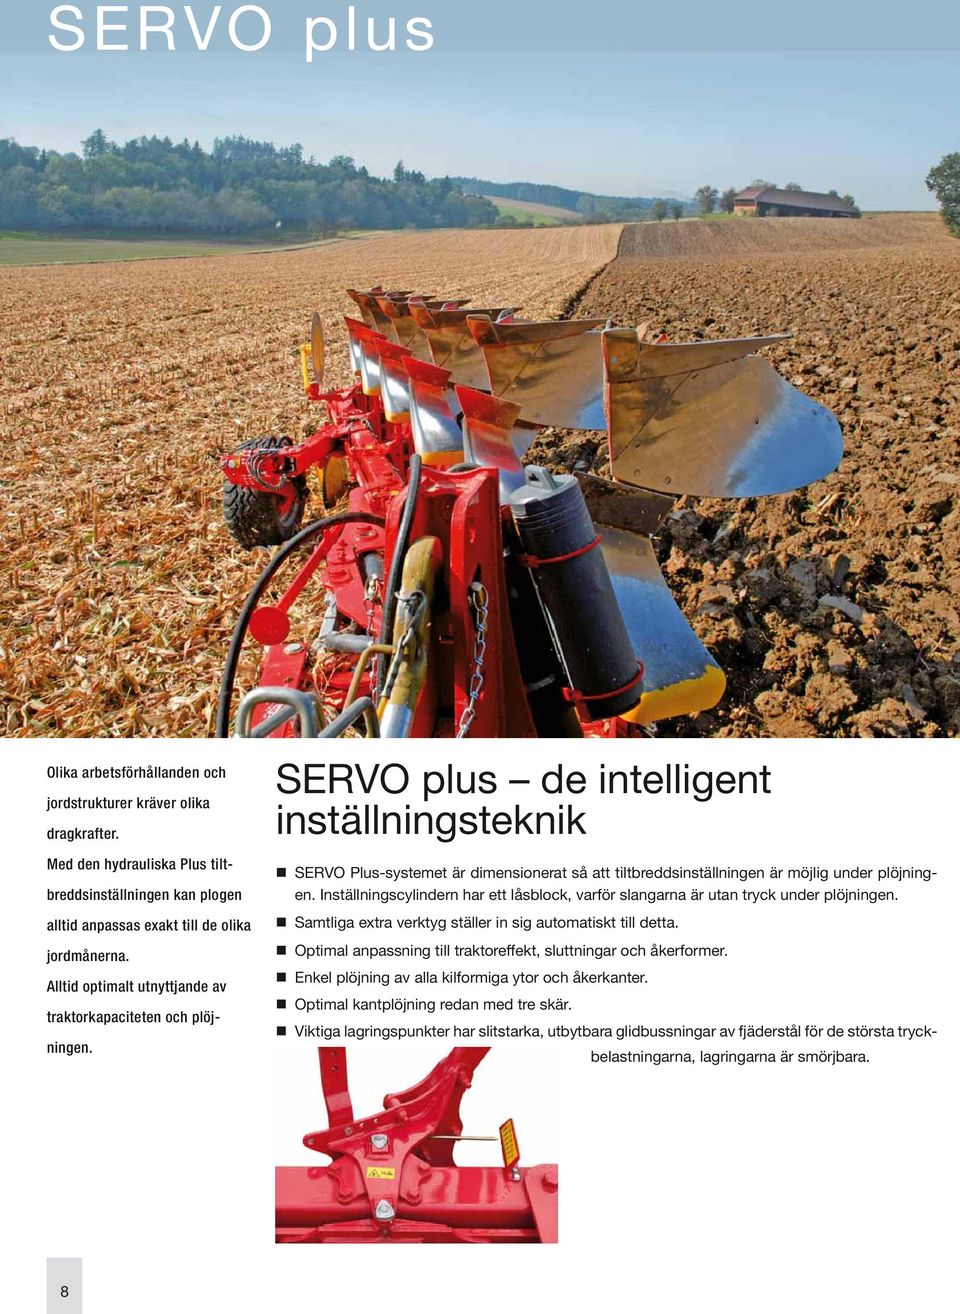 SERVO plus de intelligent inställningsteknik SERVO Plus-systemet är dimensionerat så att tiltbreddsinställningen är möjlig under plöjningen.